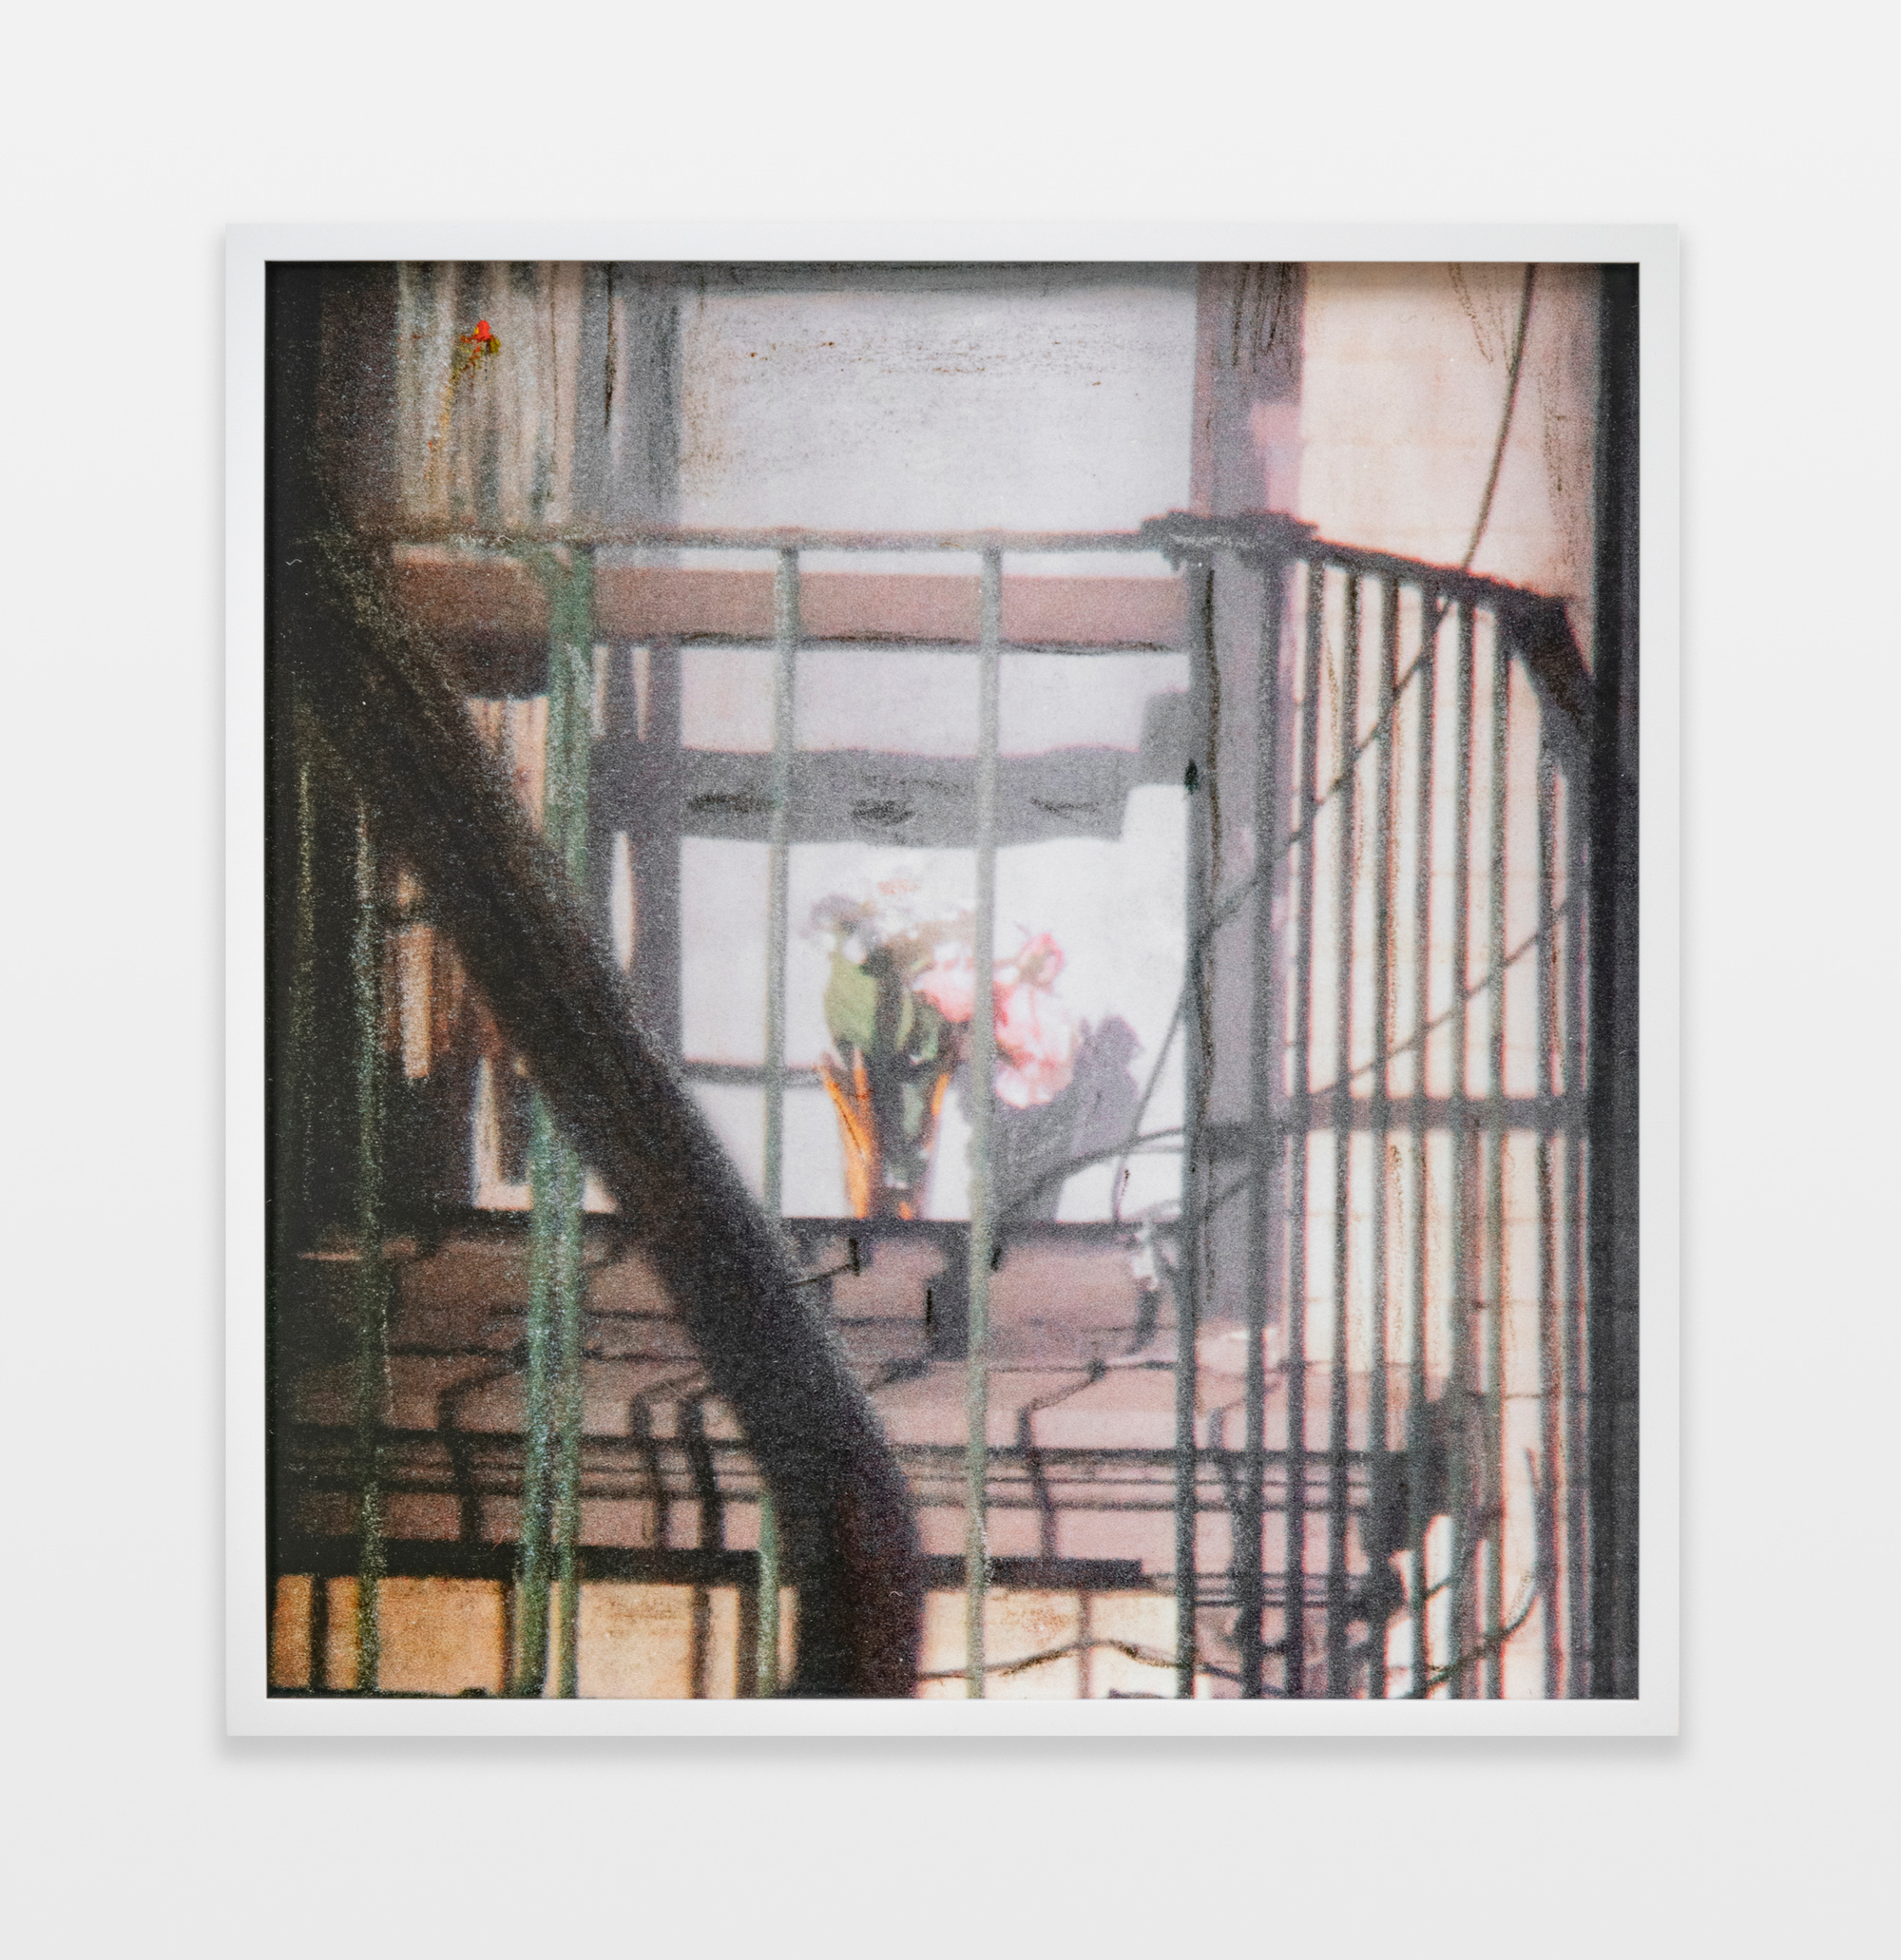 Barbara Ess, Fire Escape [Shut-In Series], 2018/2019, Archival pigment print, 23h x 22w in.